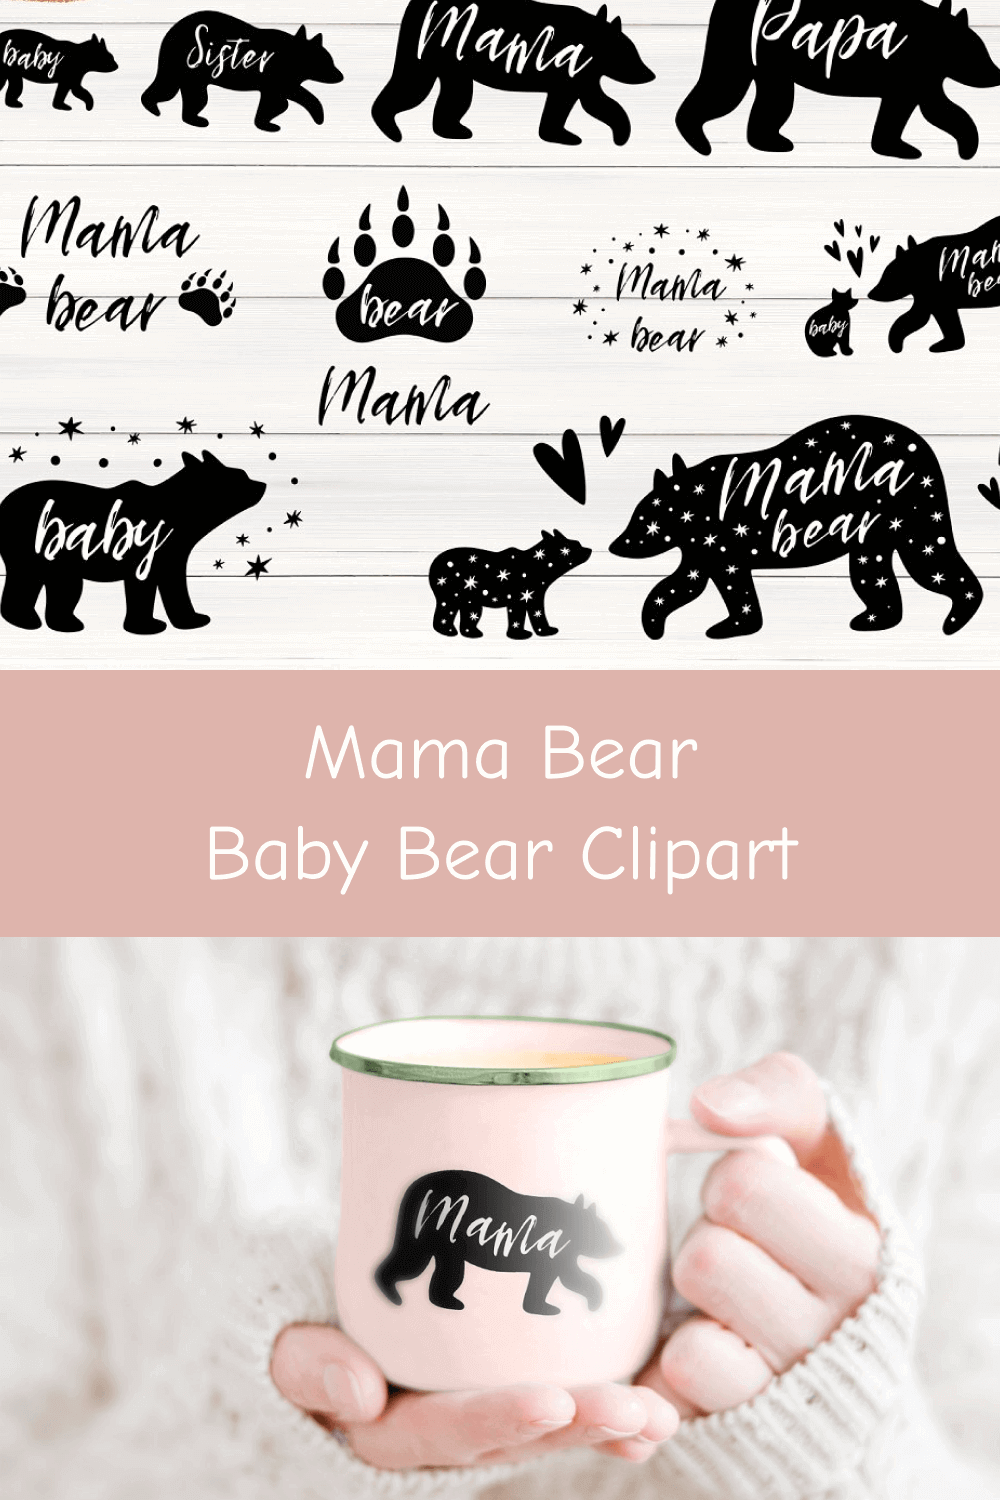 Mama Bear, Baby Bear Clipart on the Cup.